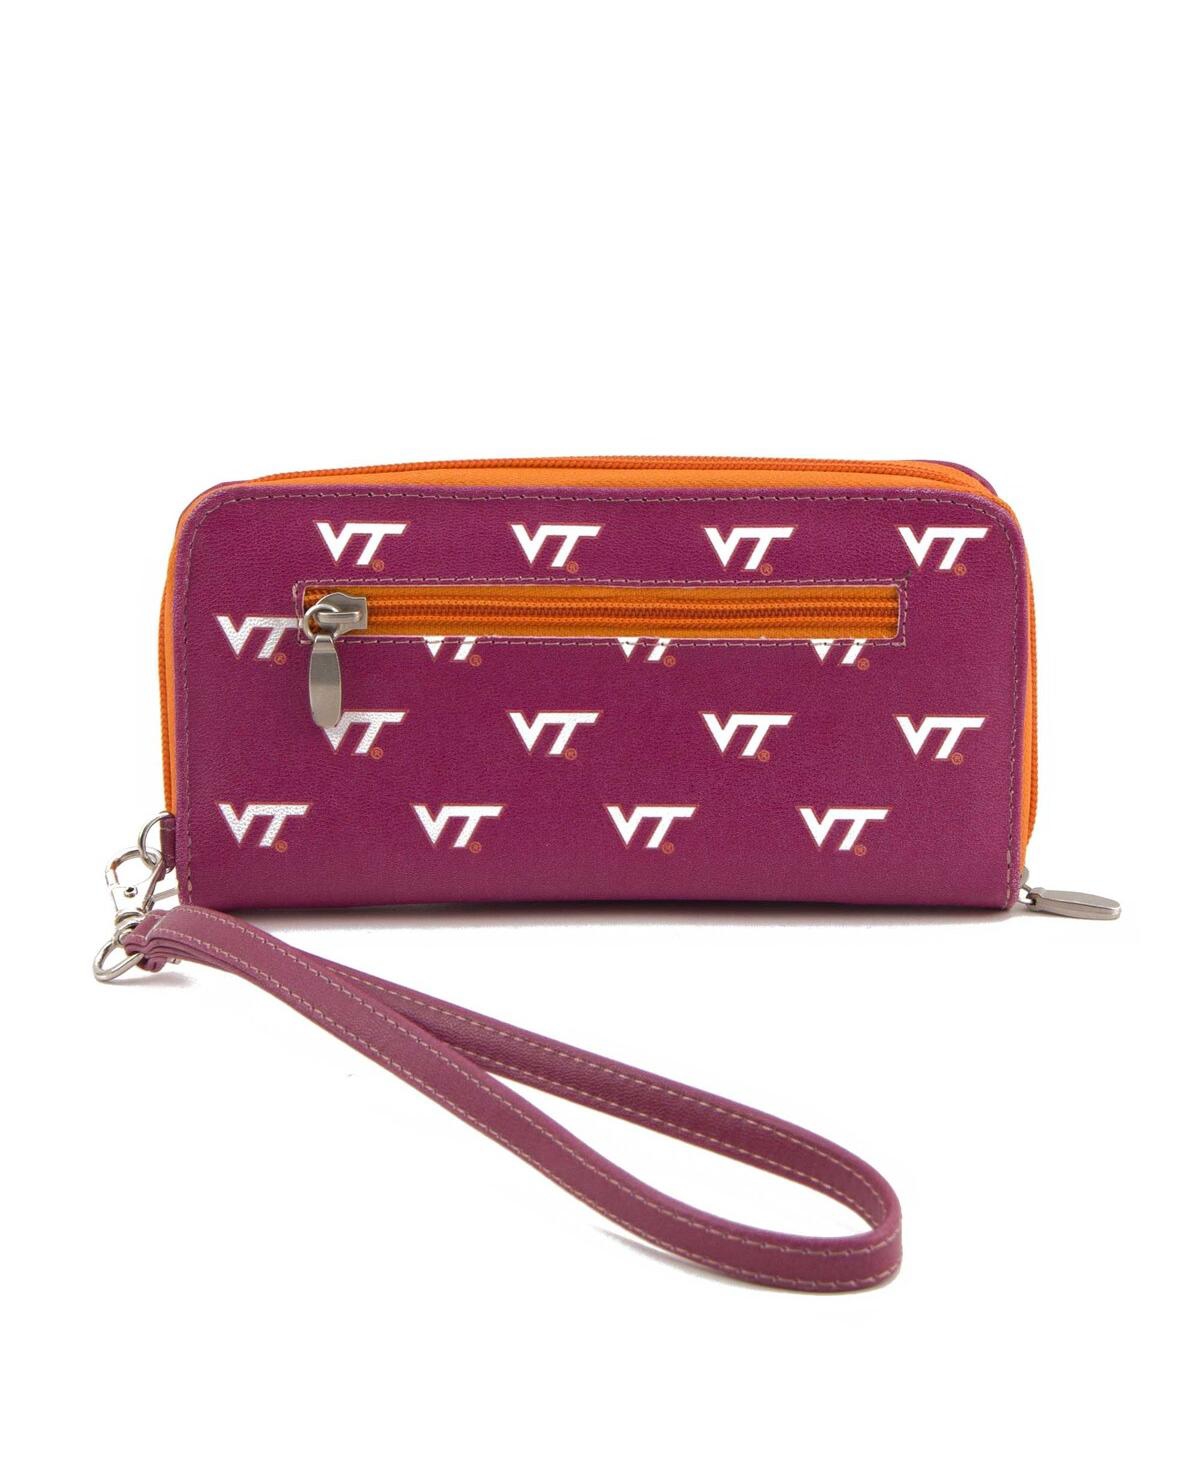 Women's Virginia Tech Hokies Zip-Around Wristlet Wallet - Maroon